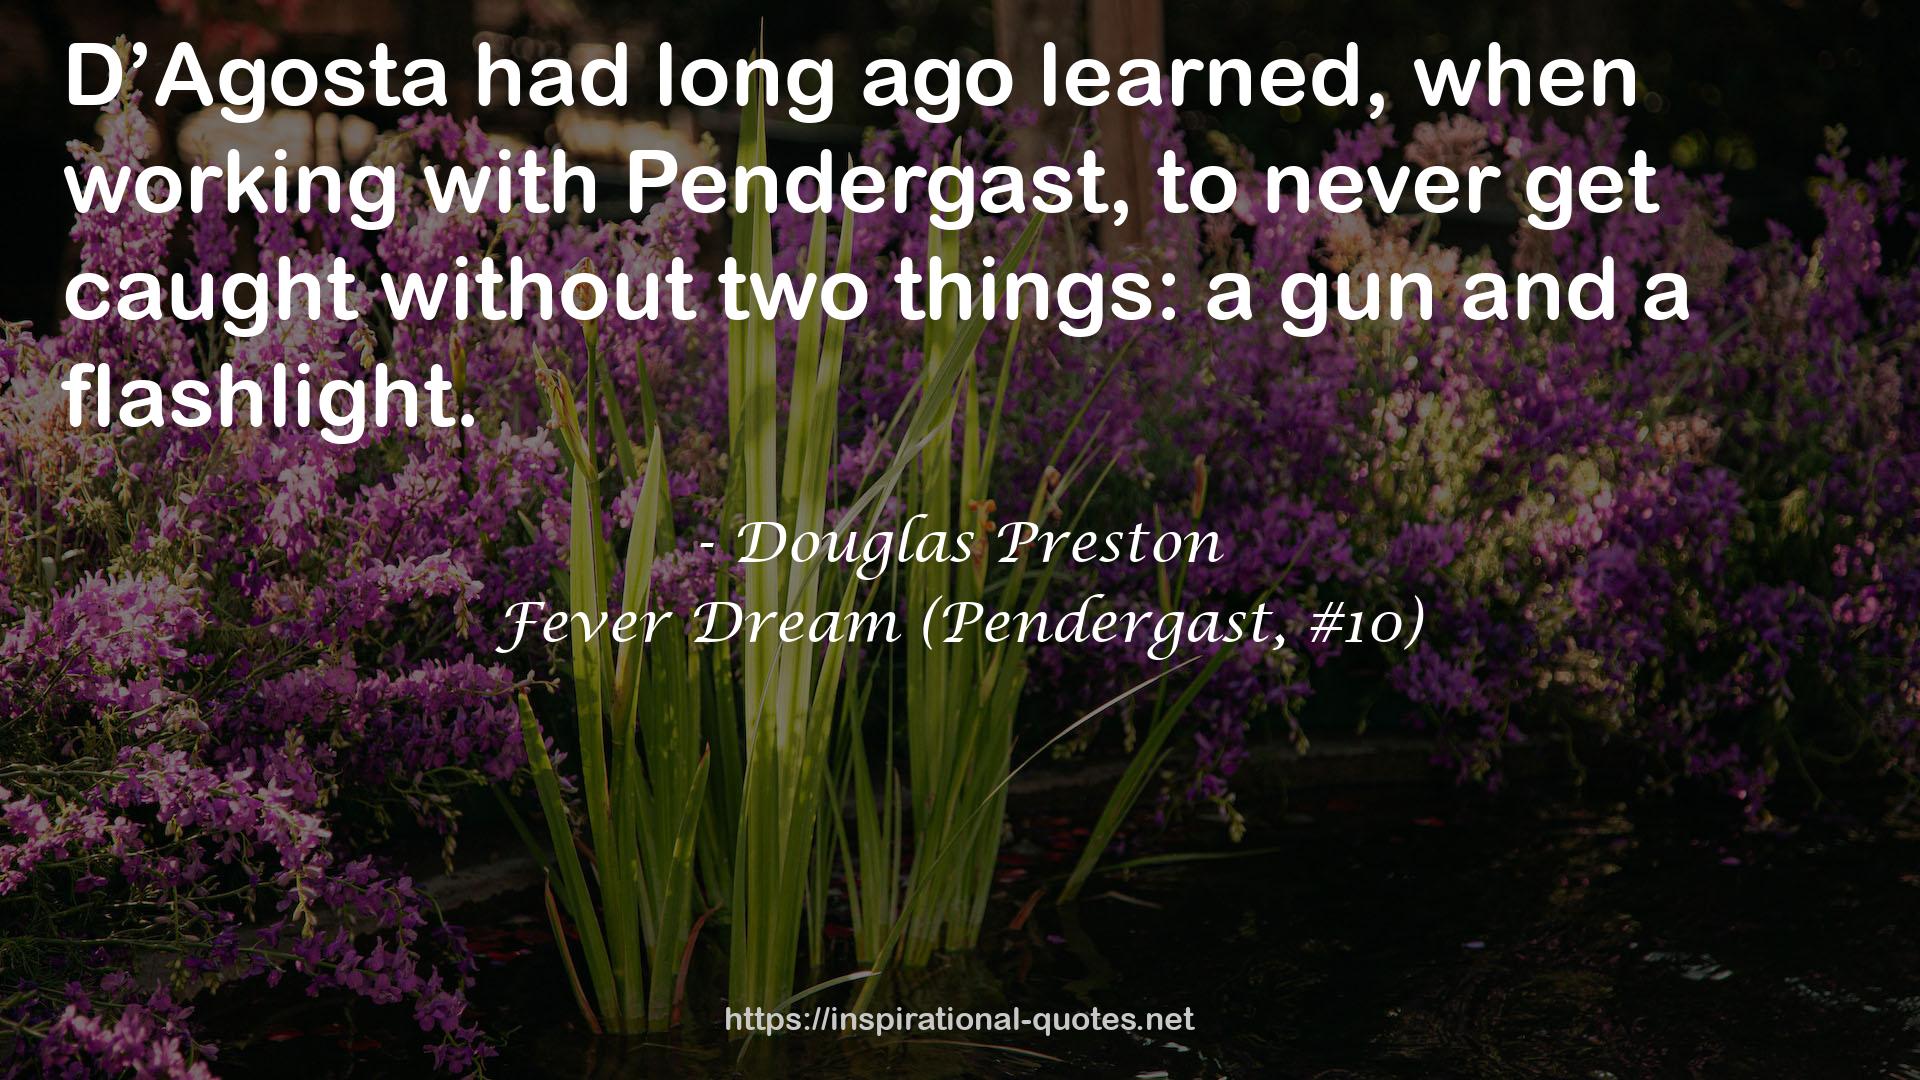 Fever Dream (Pendergast, #10) QUOTES